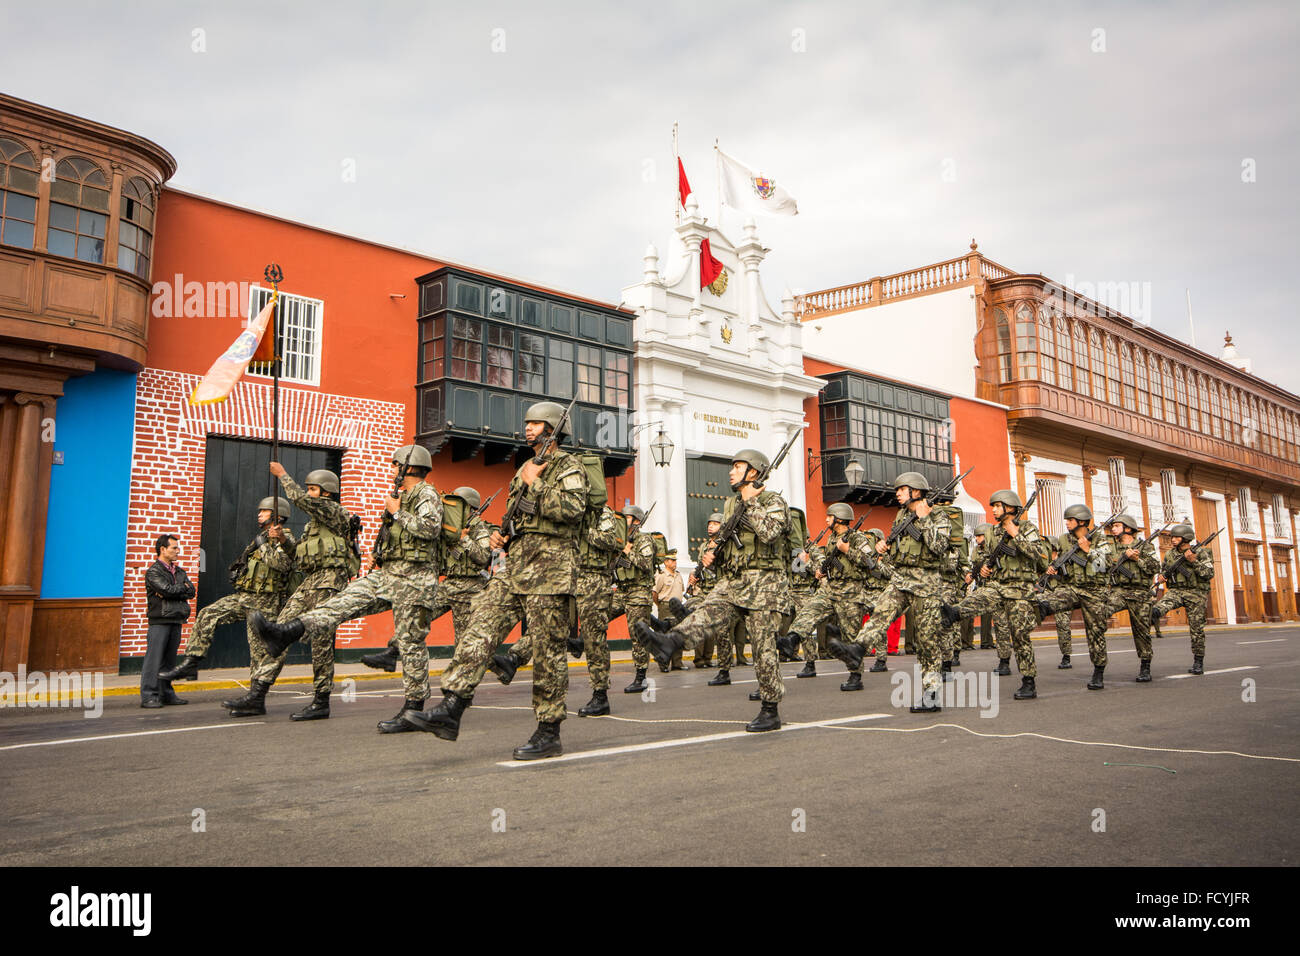 Los miembros del ejército peruano el domingo desfile en la plaza principal de la ciudad de Trujillo en el norte del Perú Foto de stock